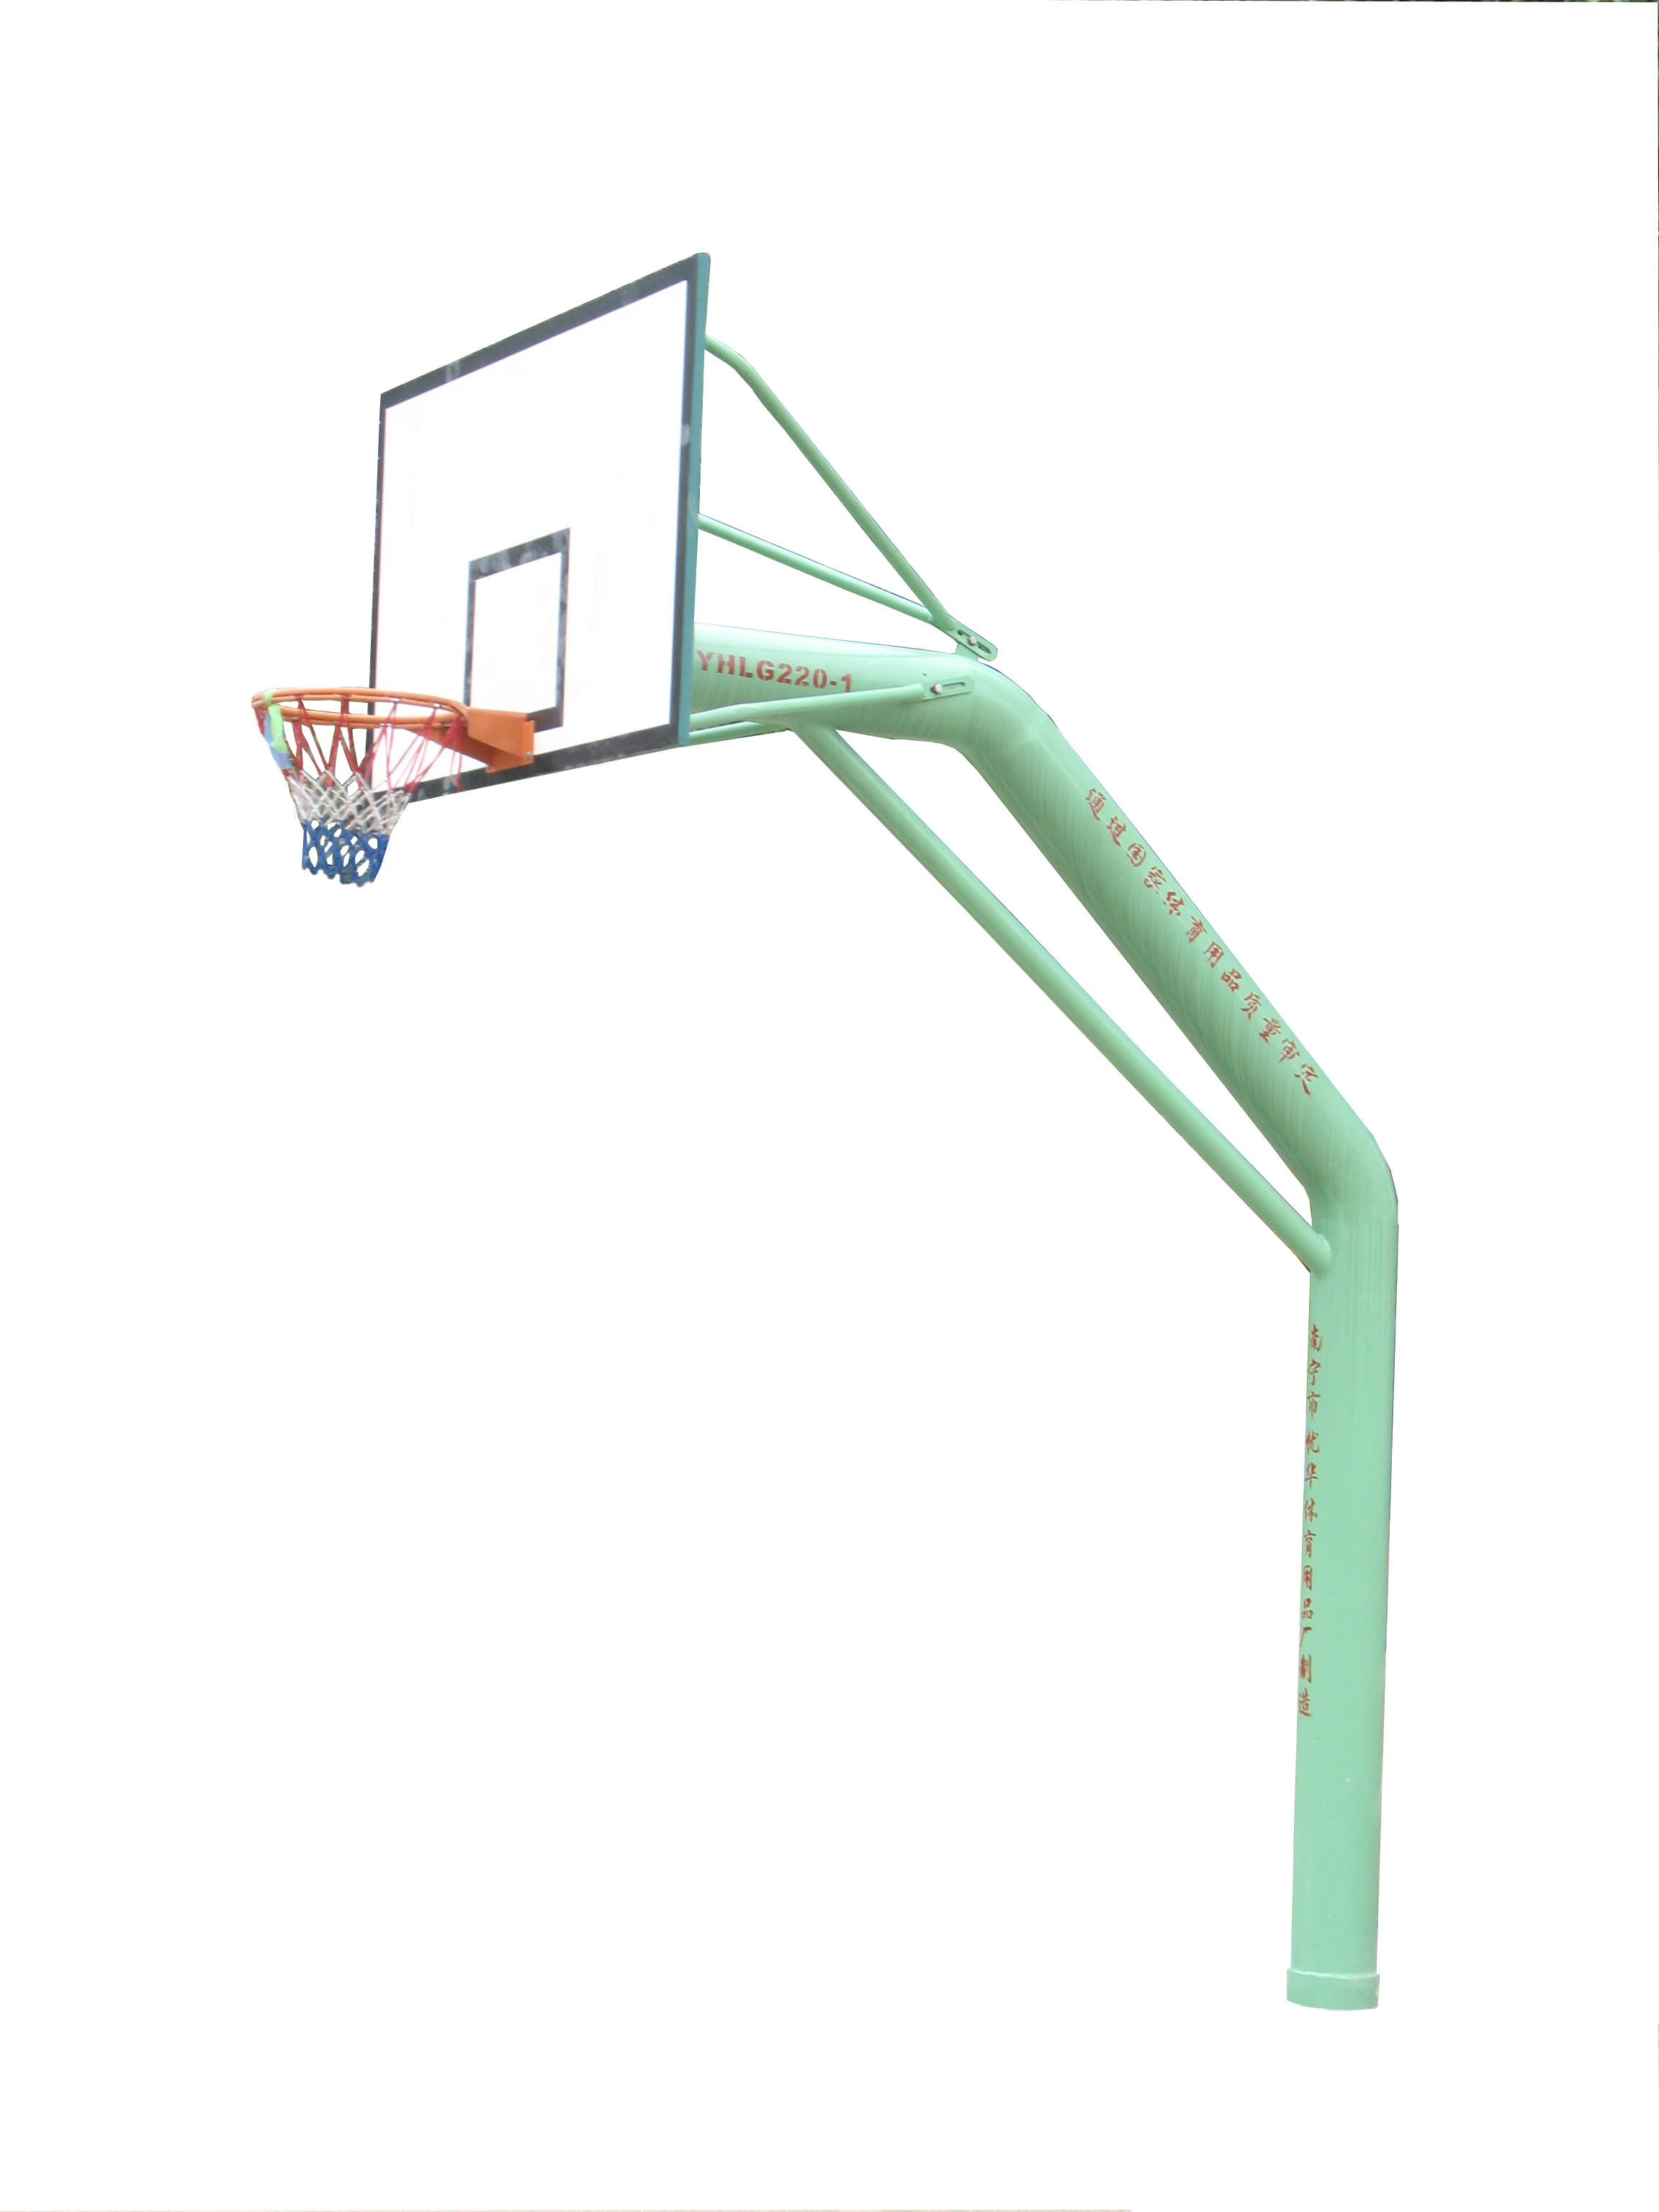 22独臂固定篮球架YHLM-220-1.jpg